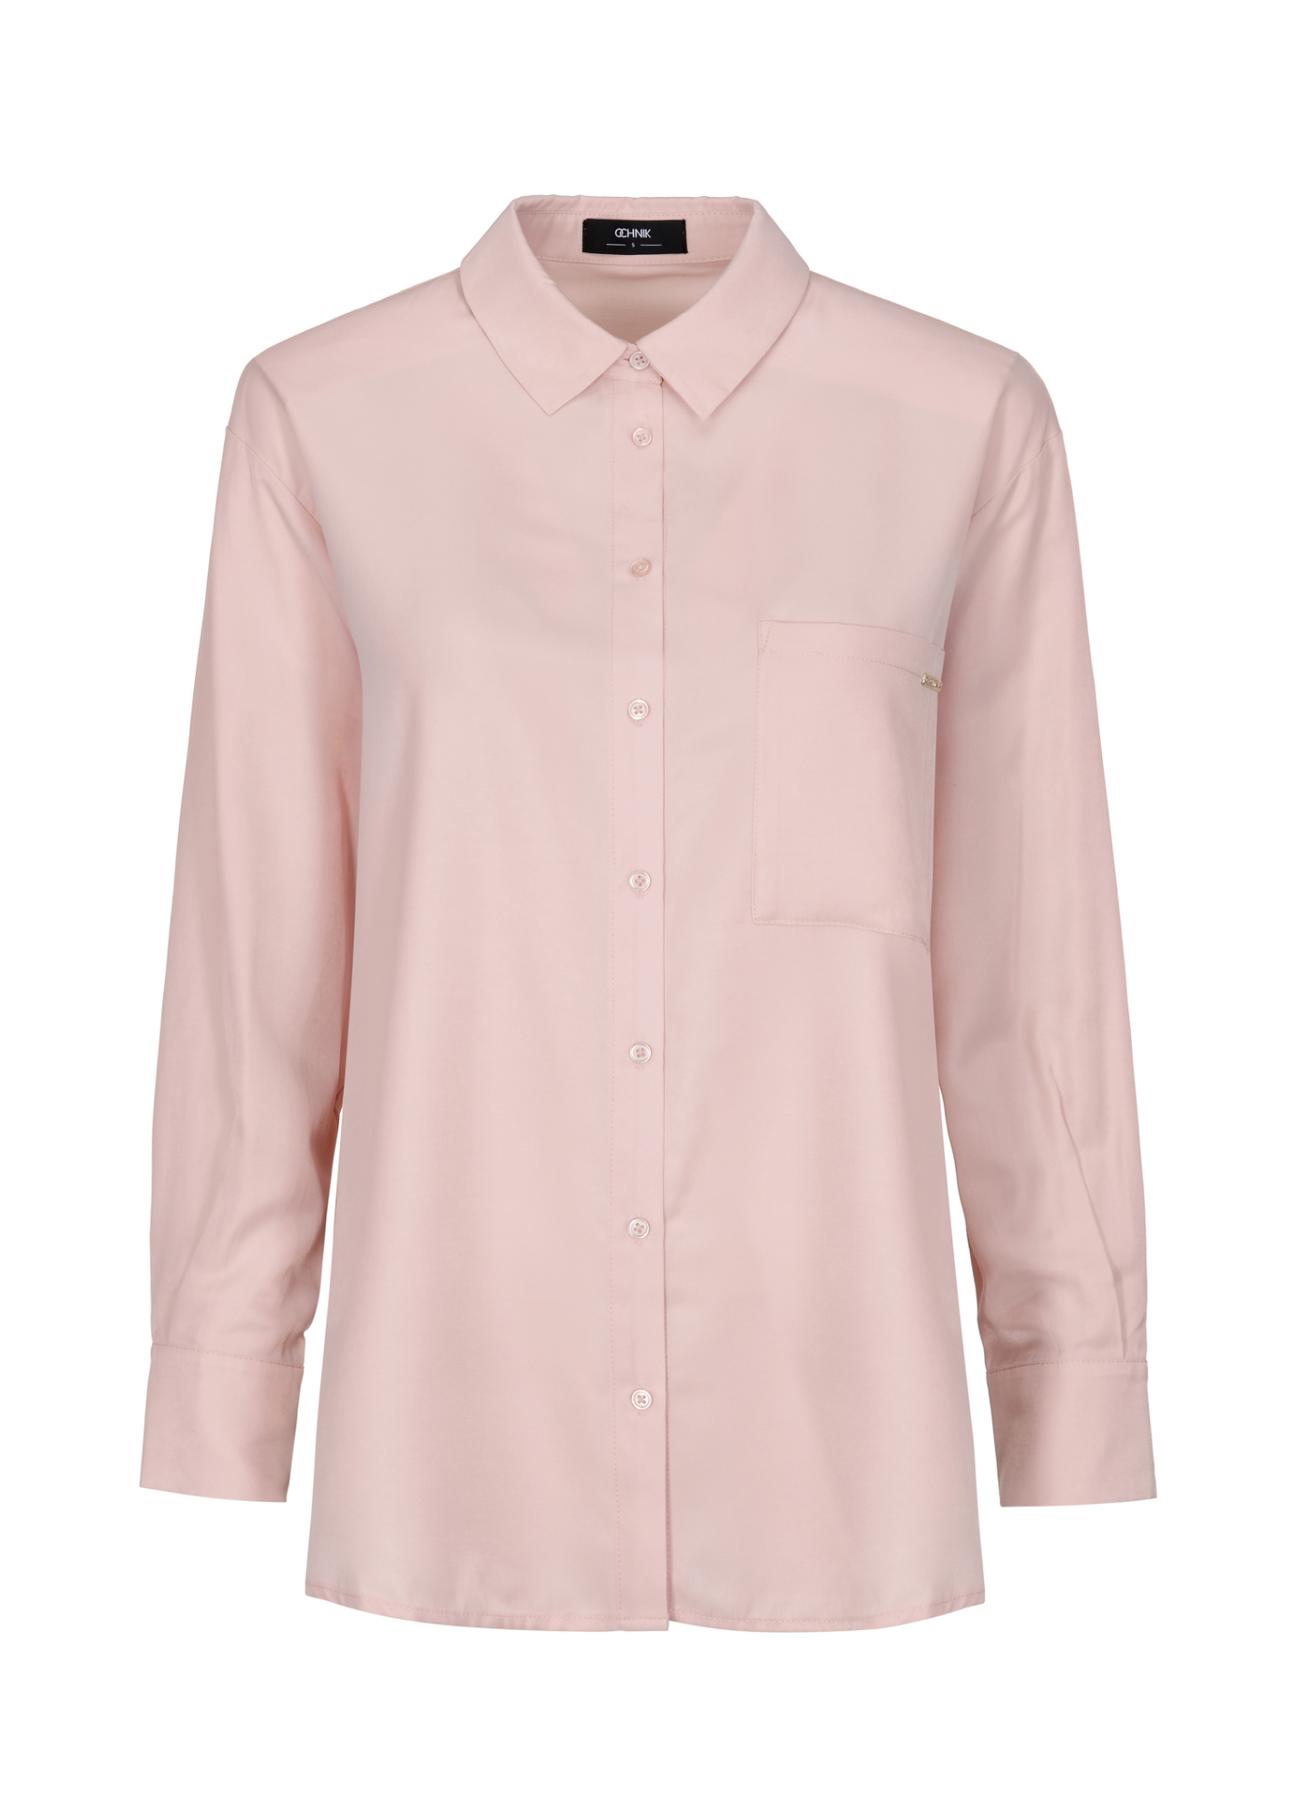 Lekka różowa koszula damska KOSDT-0149-34(Z23)